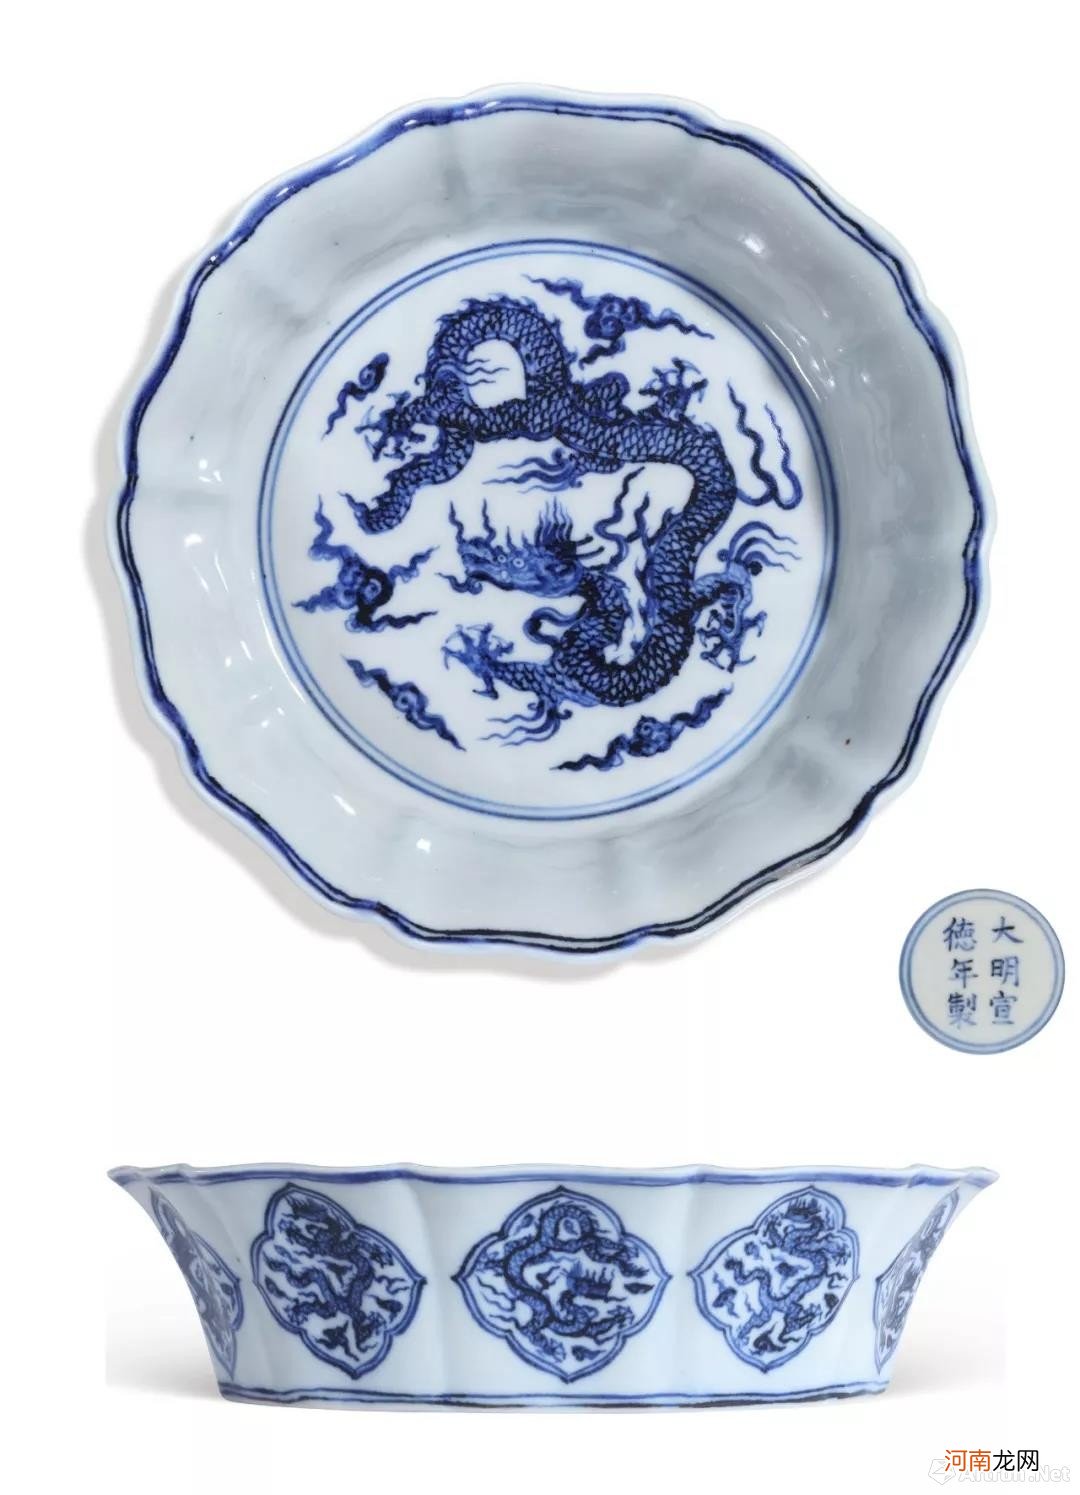 北京保利秋拍的大明宣德年制瓷器 大明宣德年制瓷器价格